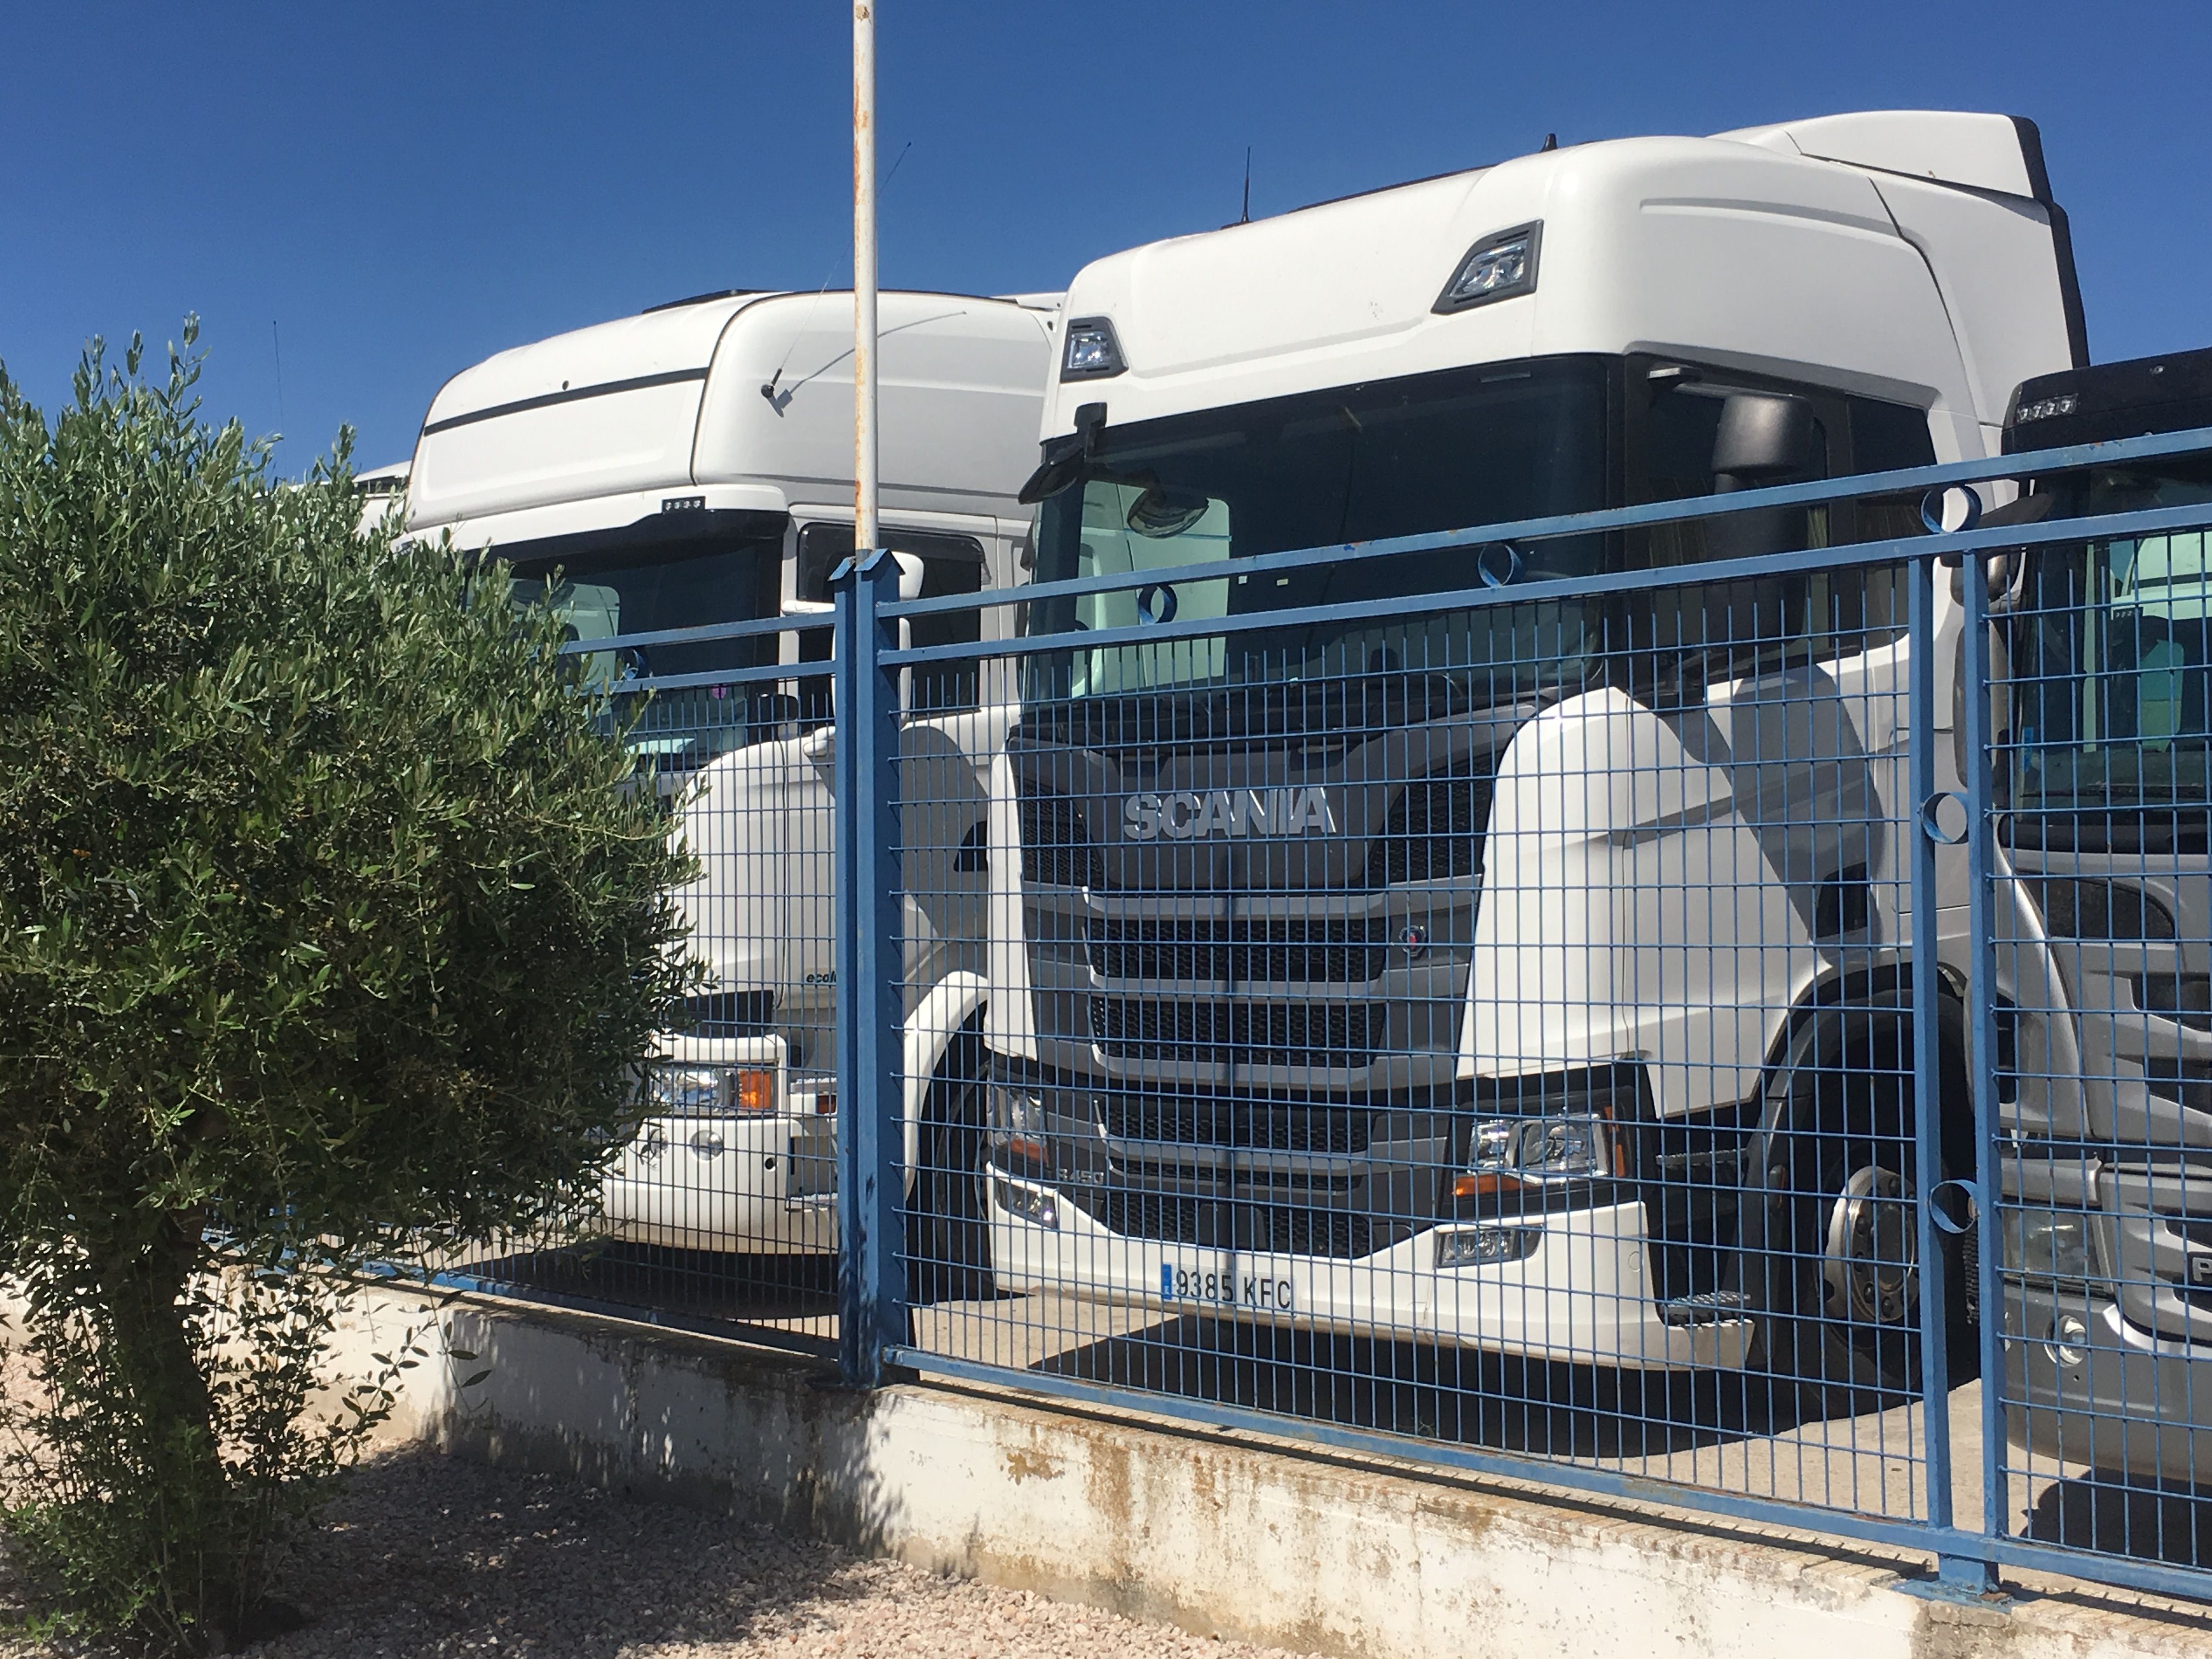 Foto 26 de Talleres de automóviles en Albacete | Talleres Camiones de Ocasión